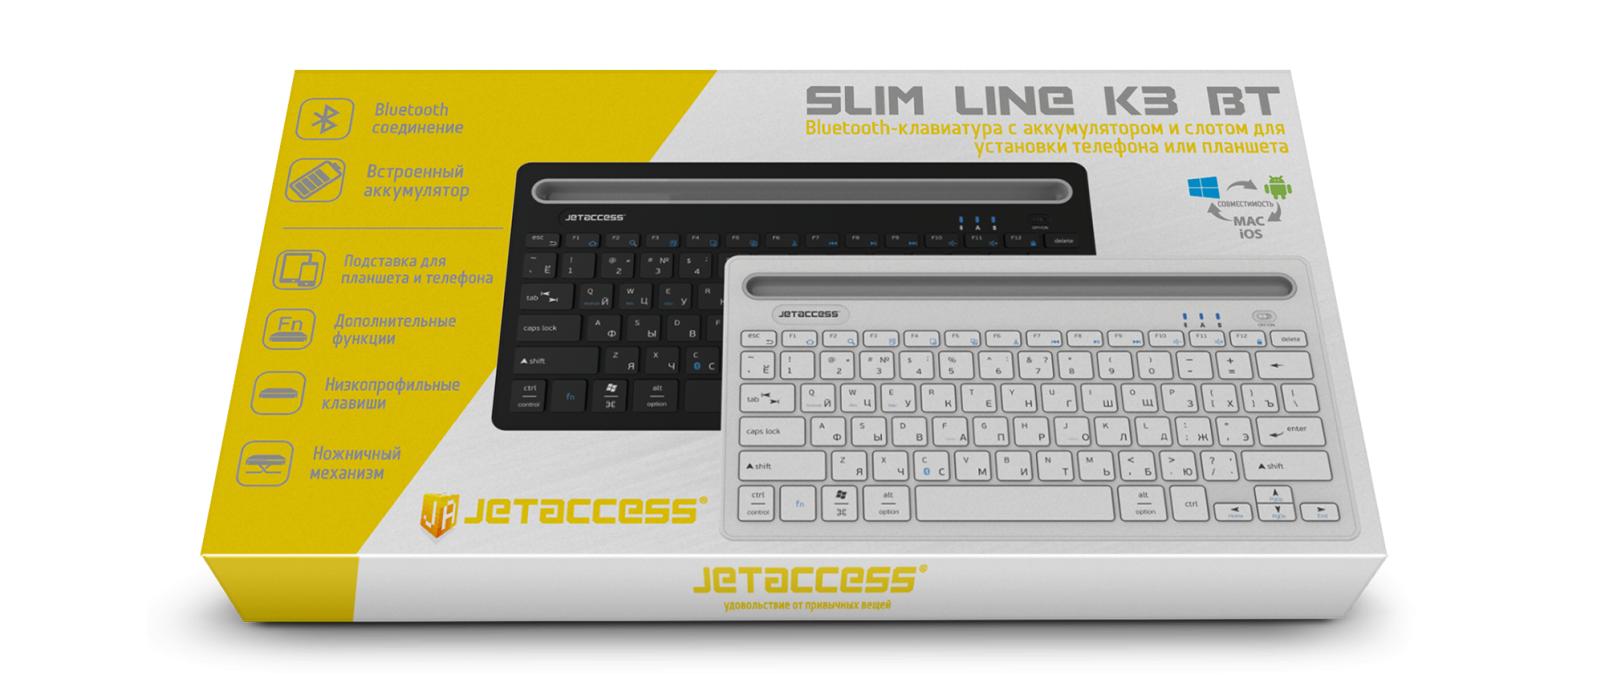 Bluetooth-клавиатура с аккумулятором и слотом для установки телефона или планшета SLIM LINE K3 BT7